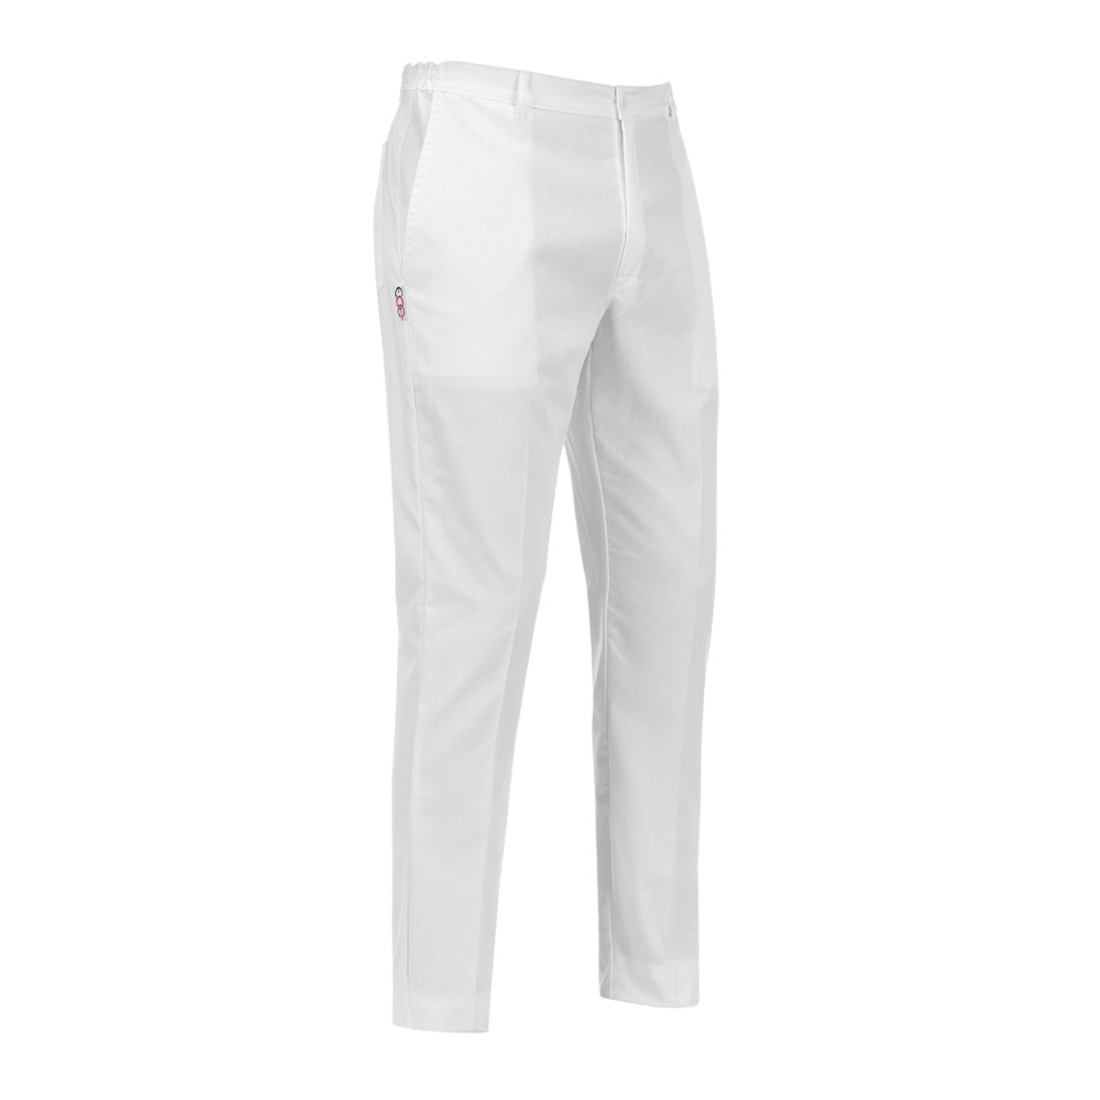 Pantalon Slim Fit - Les vêtements de protection